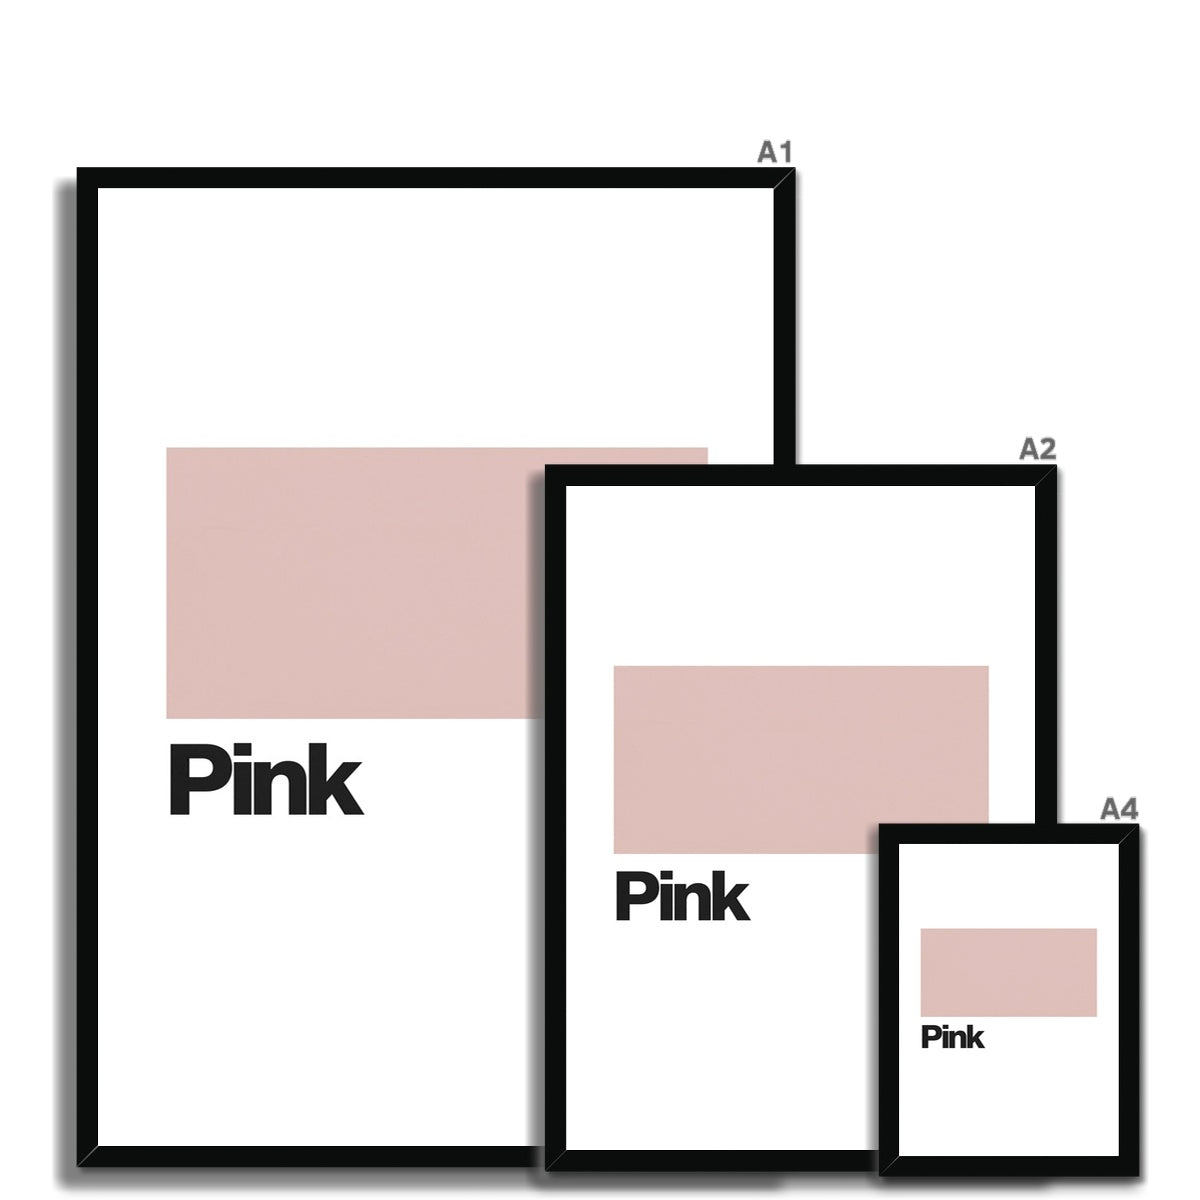 Pink Framed Print